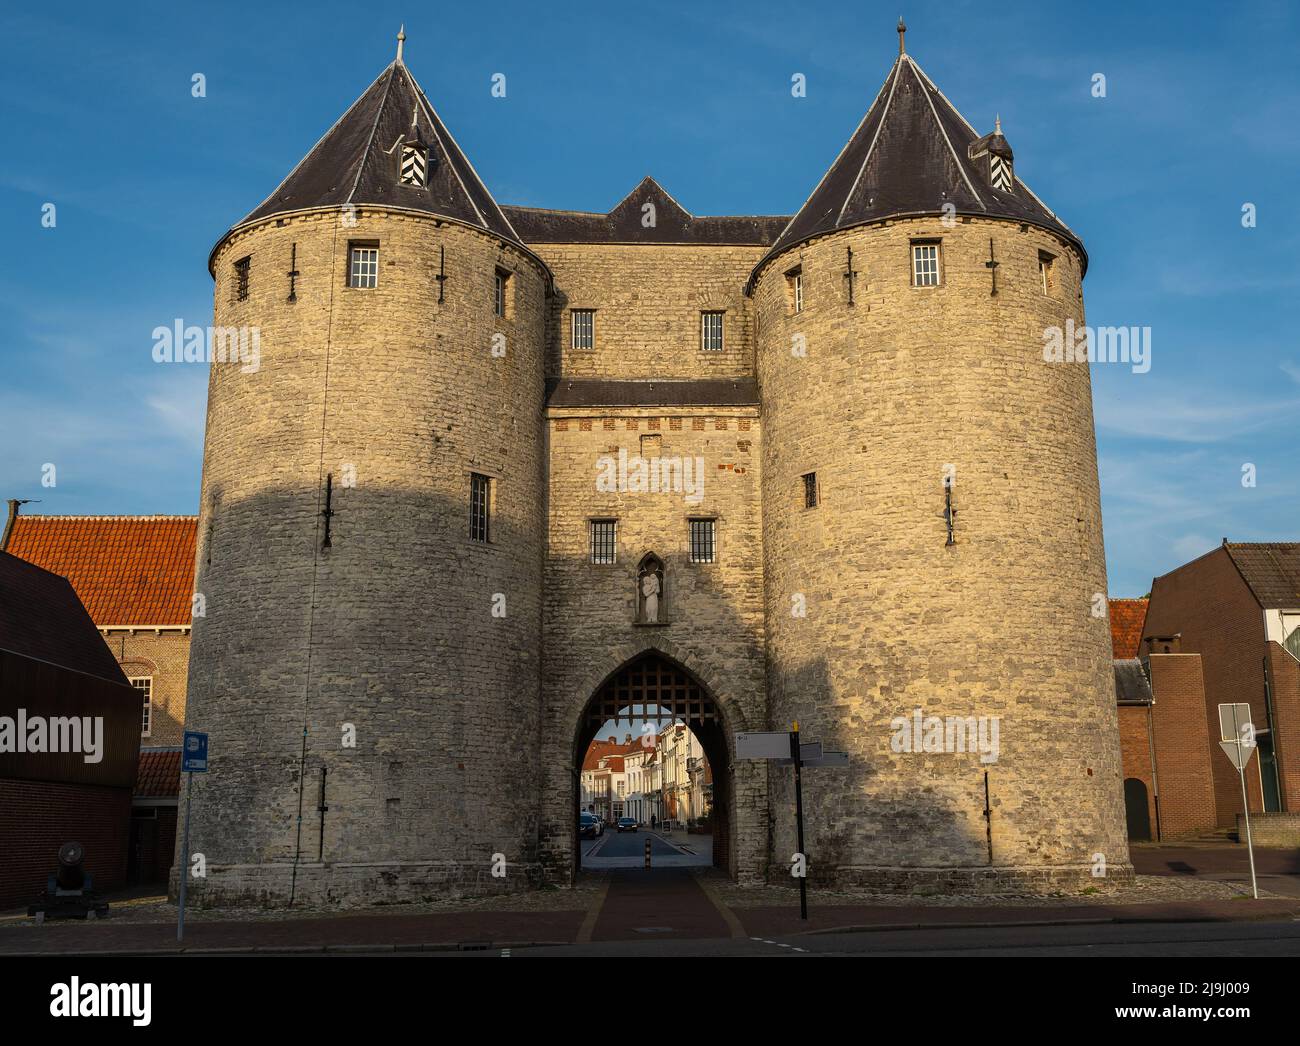 Porta storica della città conosciuta localmente come Gevangenpoort, il monumento più antico della città di Bergen op Zoom, Paesi Bassi Foto Stock